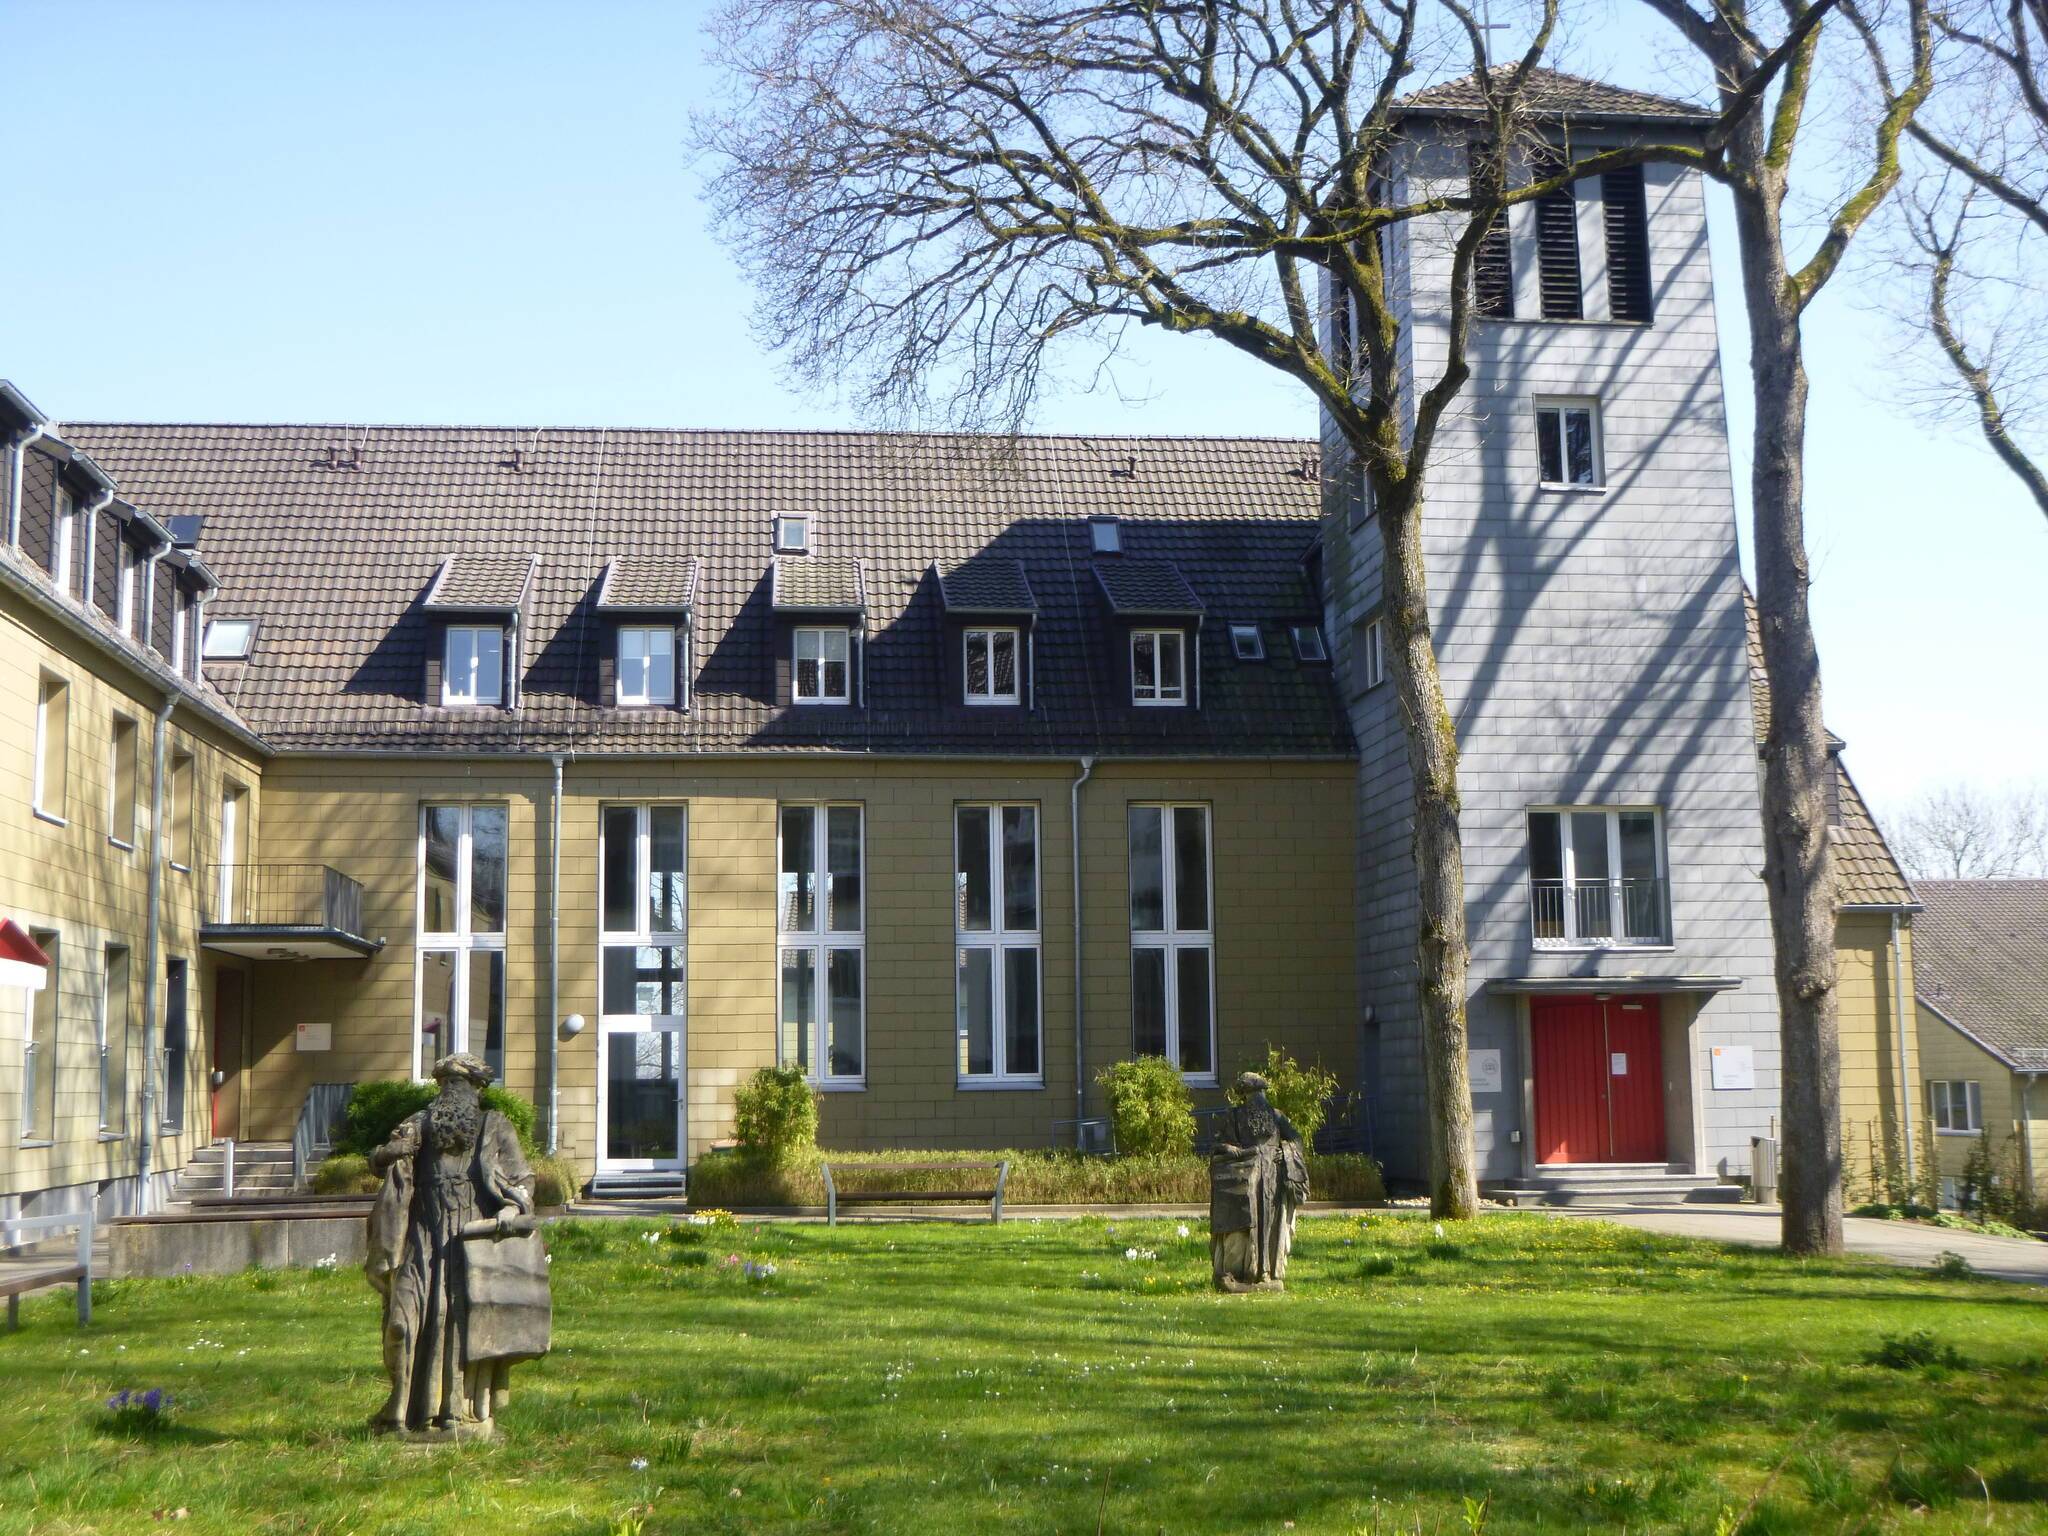  Das Audimax der Kirchlichen Hochschule auf dem Campus Wuppertal. 